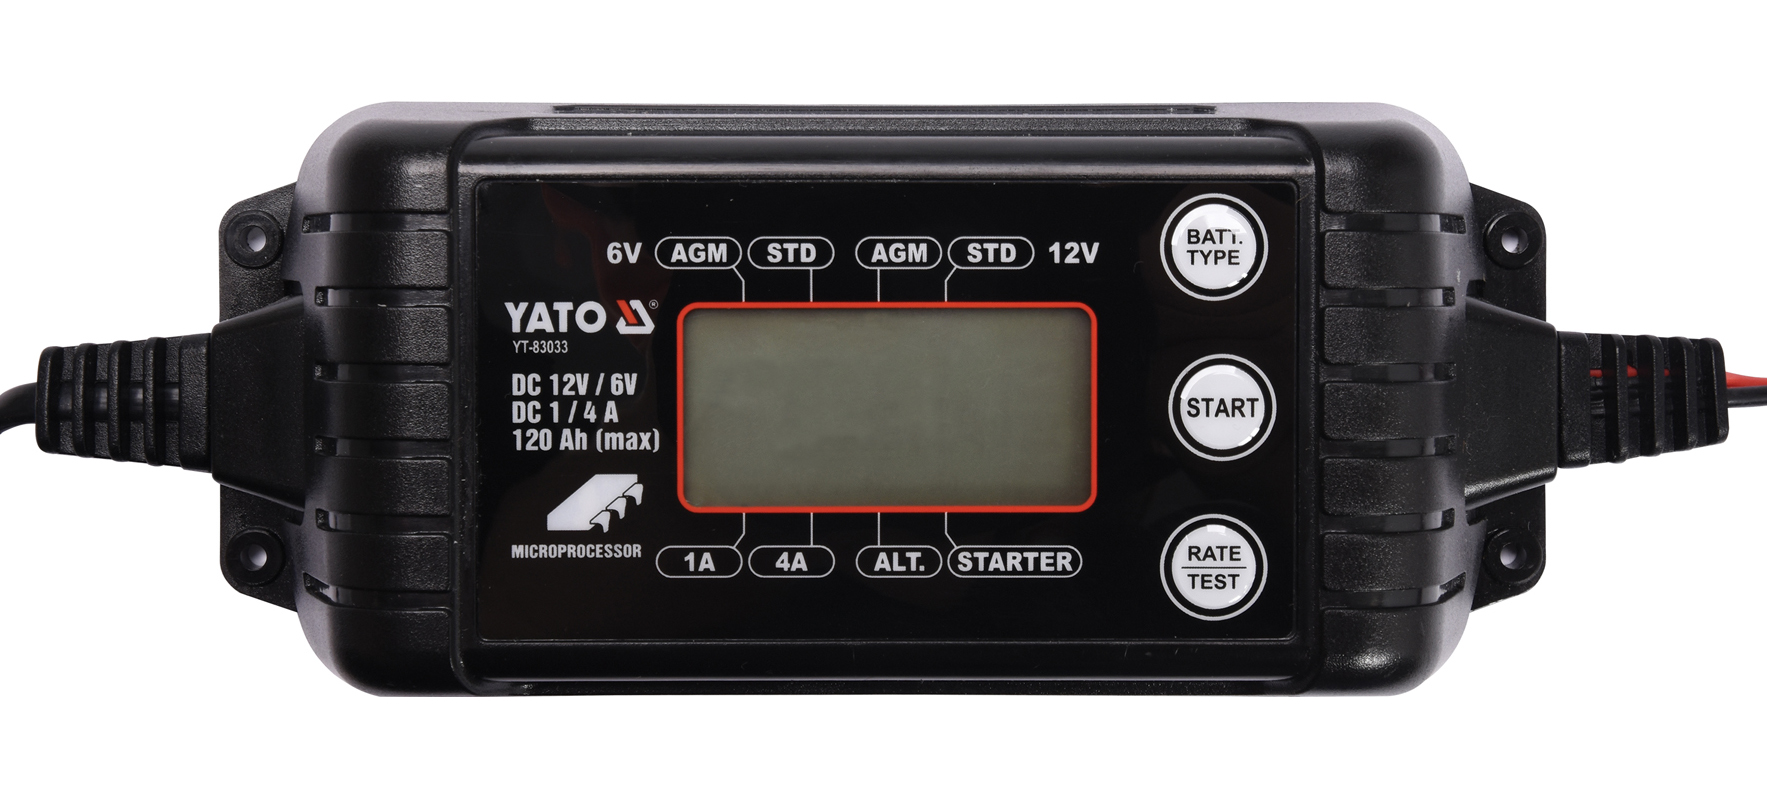 Nabíječka 4A 6/12V PB/GEL LCD display Yato YT-83033 + Dárek, servis bez starostí v hodnotě 300Kč